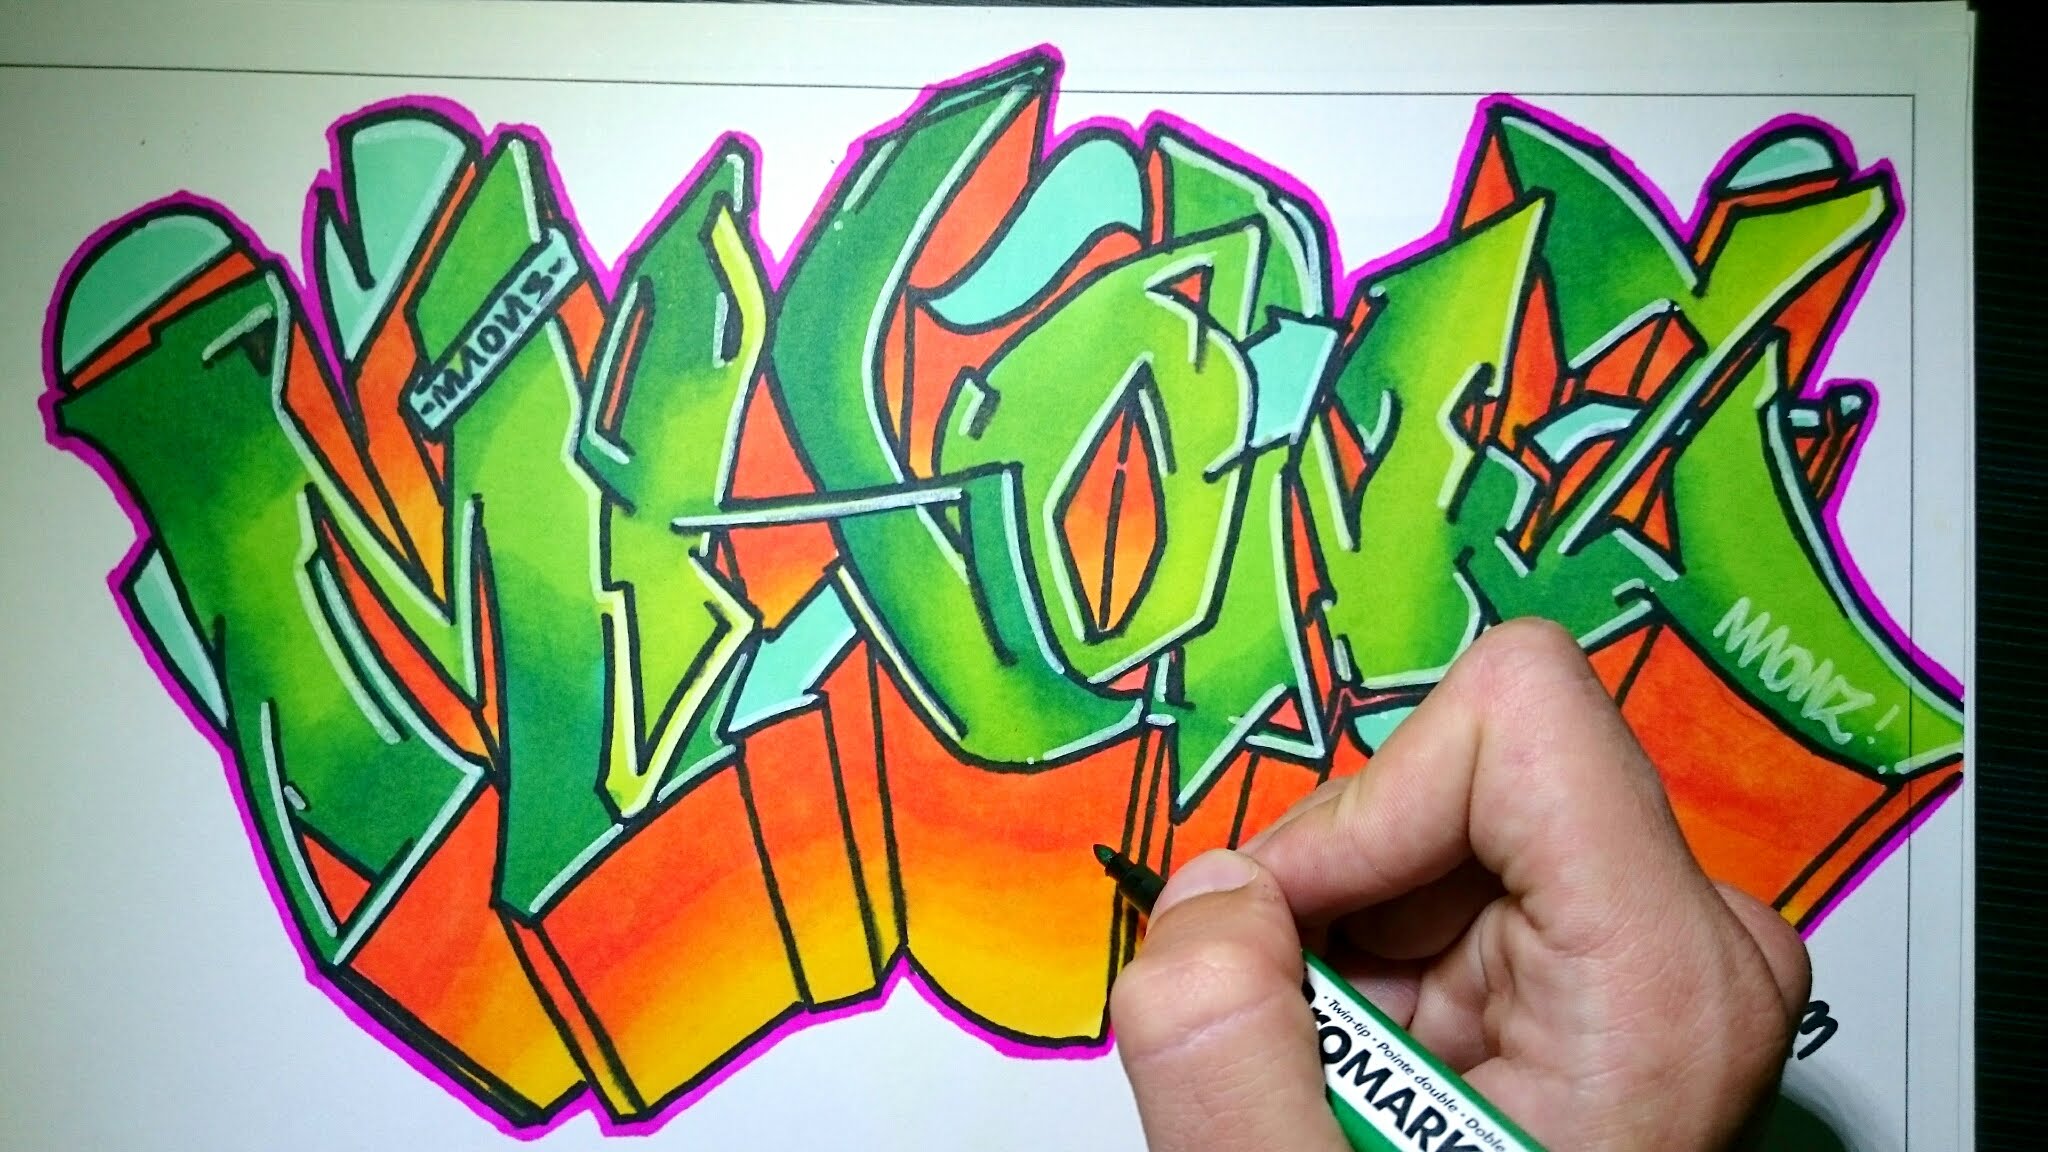 Drawing Graffiti on paper - Maonz - YouTube